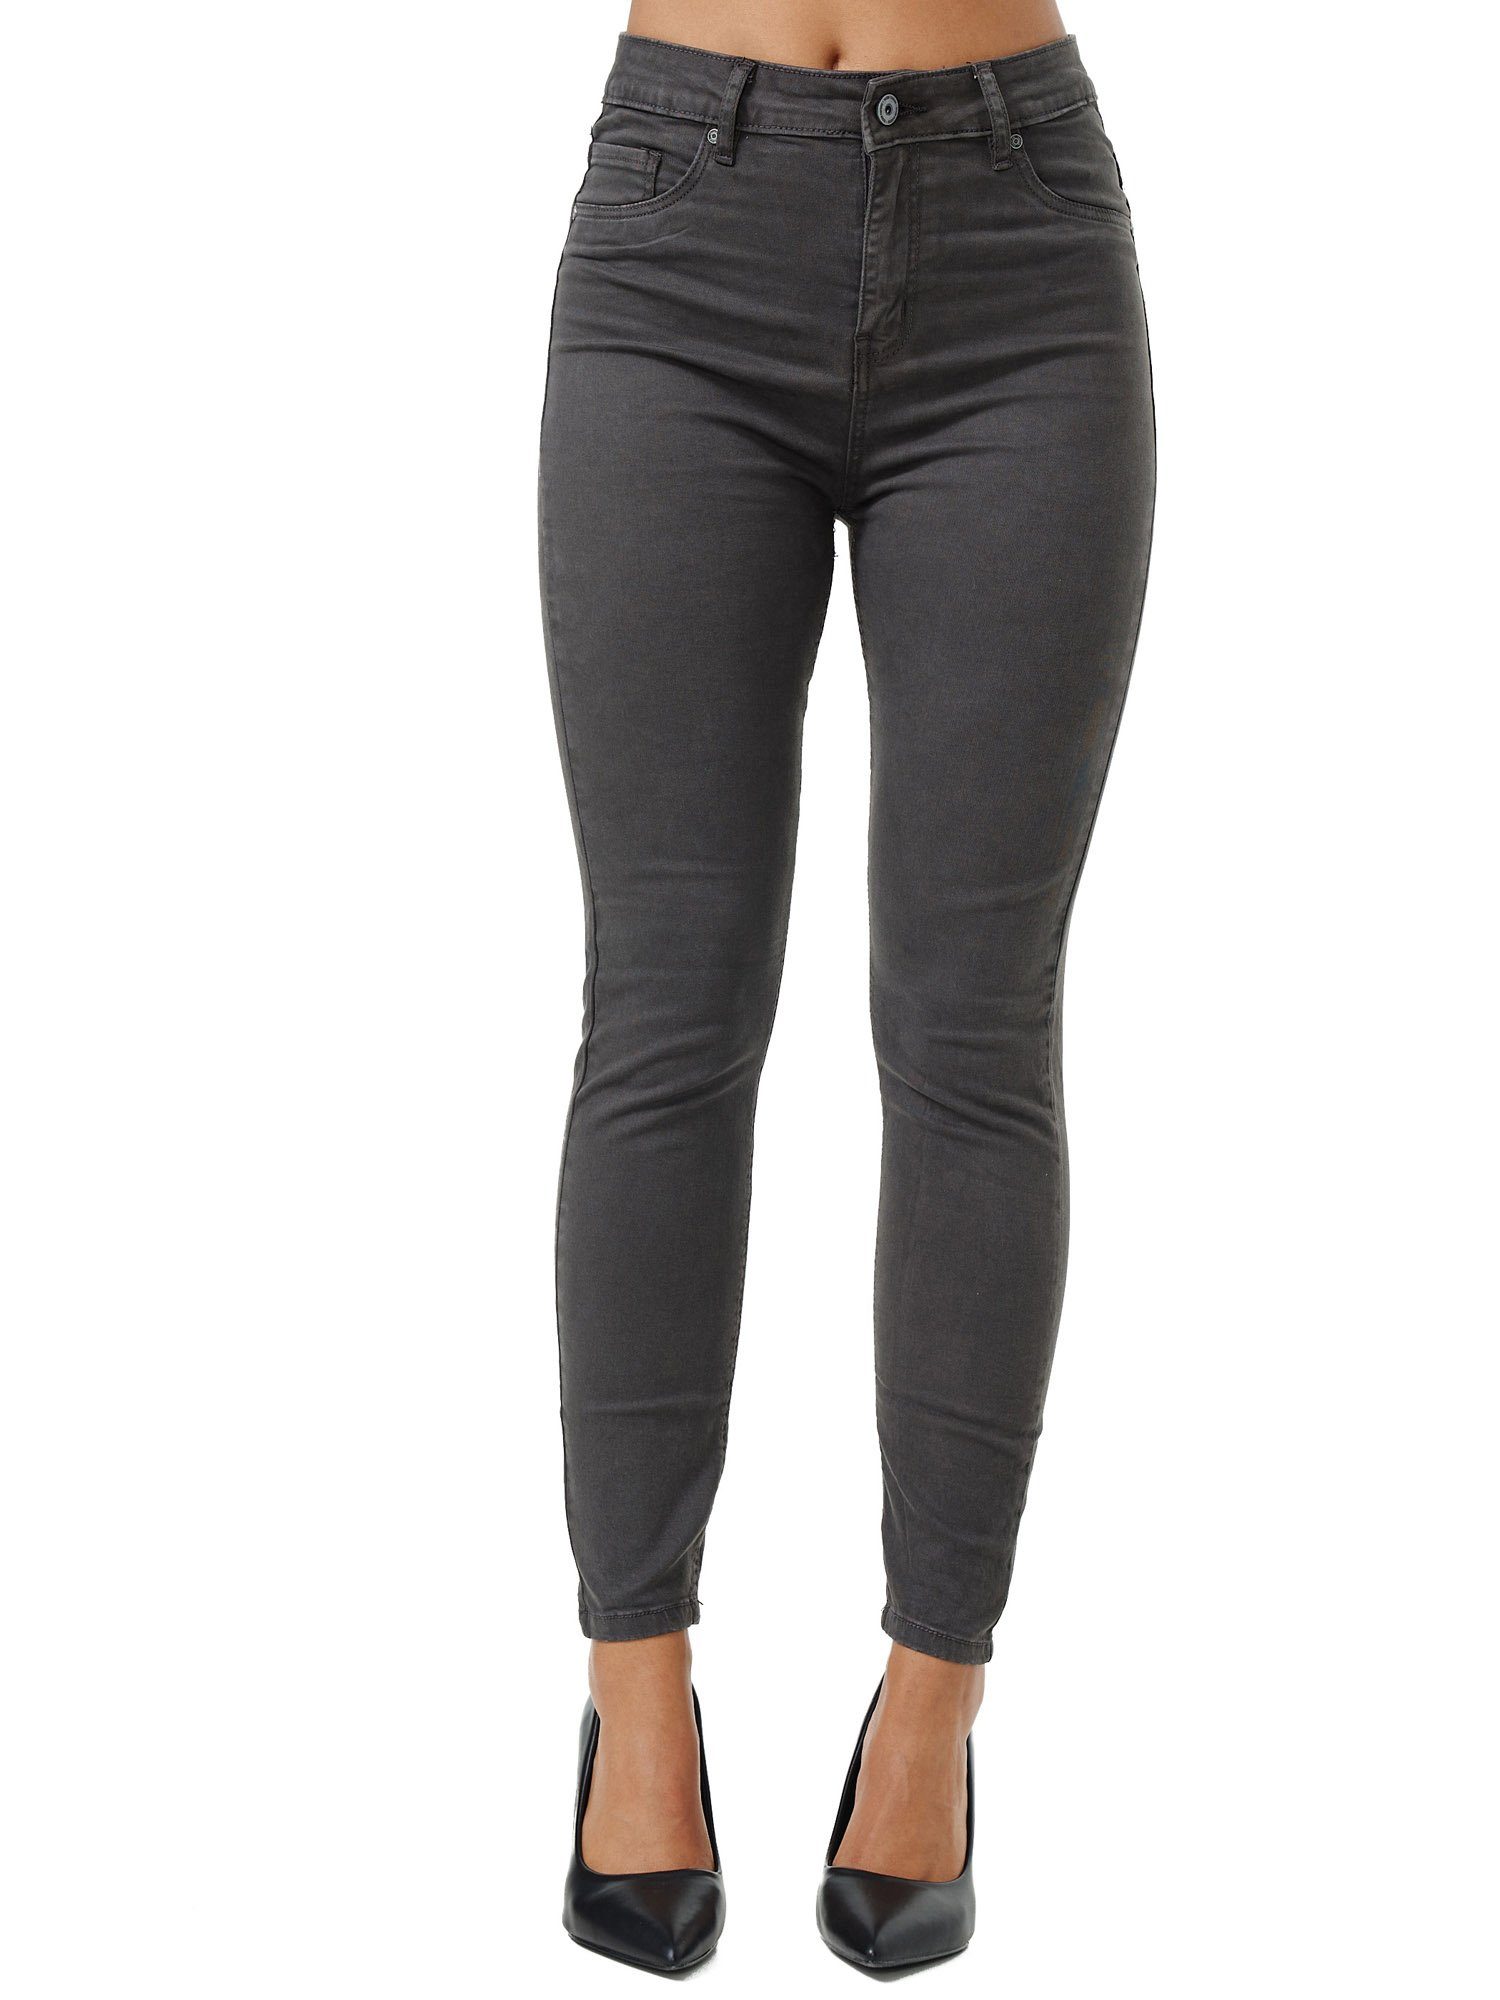 Tazzio Skinny-fit-Jeans Rise Damen anthrazit Jeanshose High F103